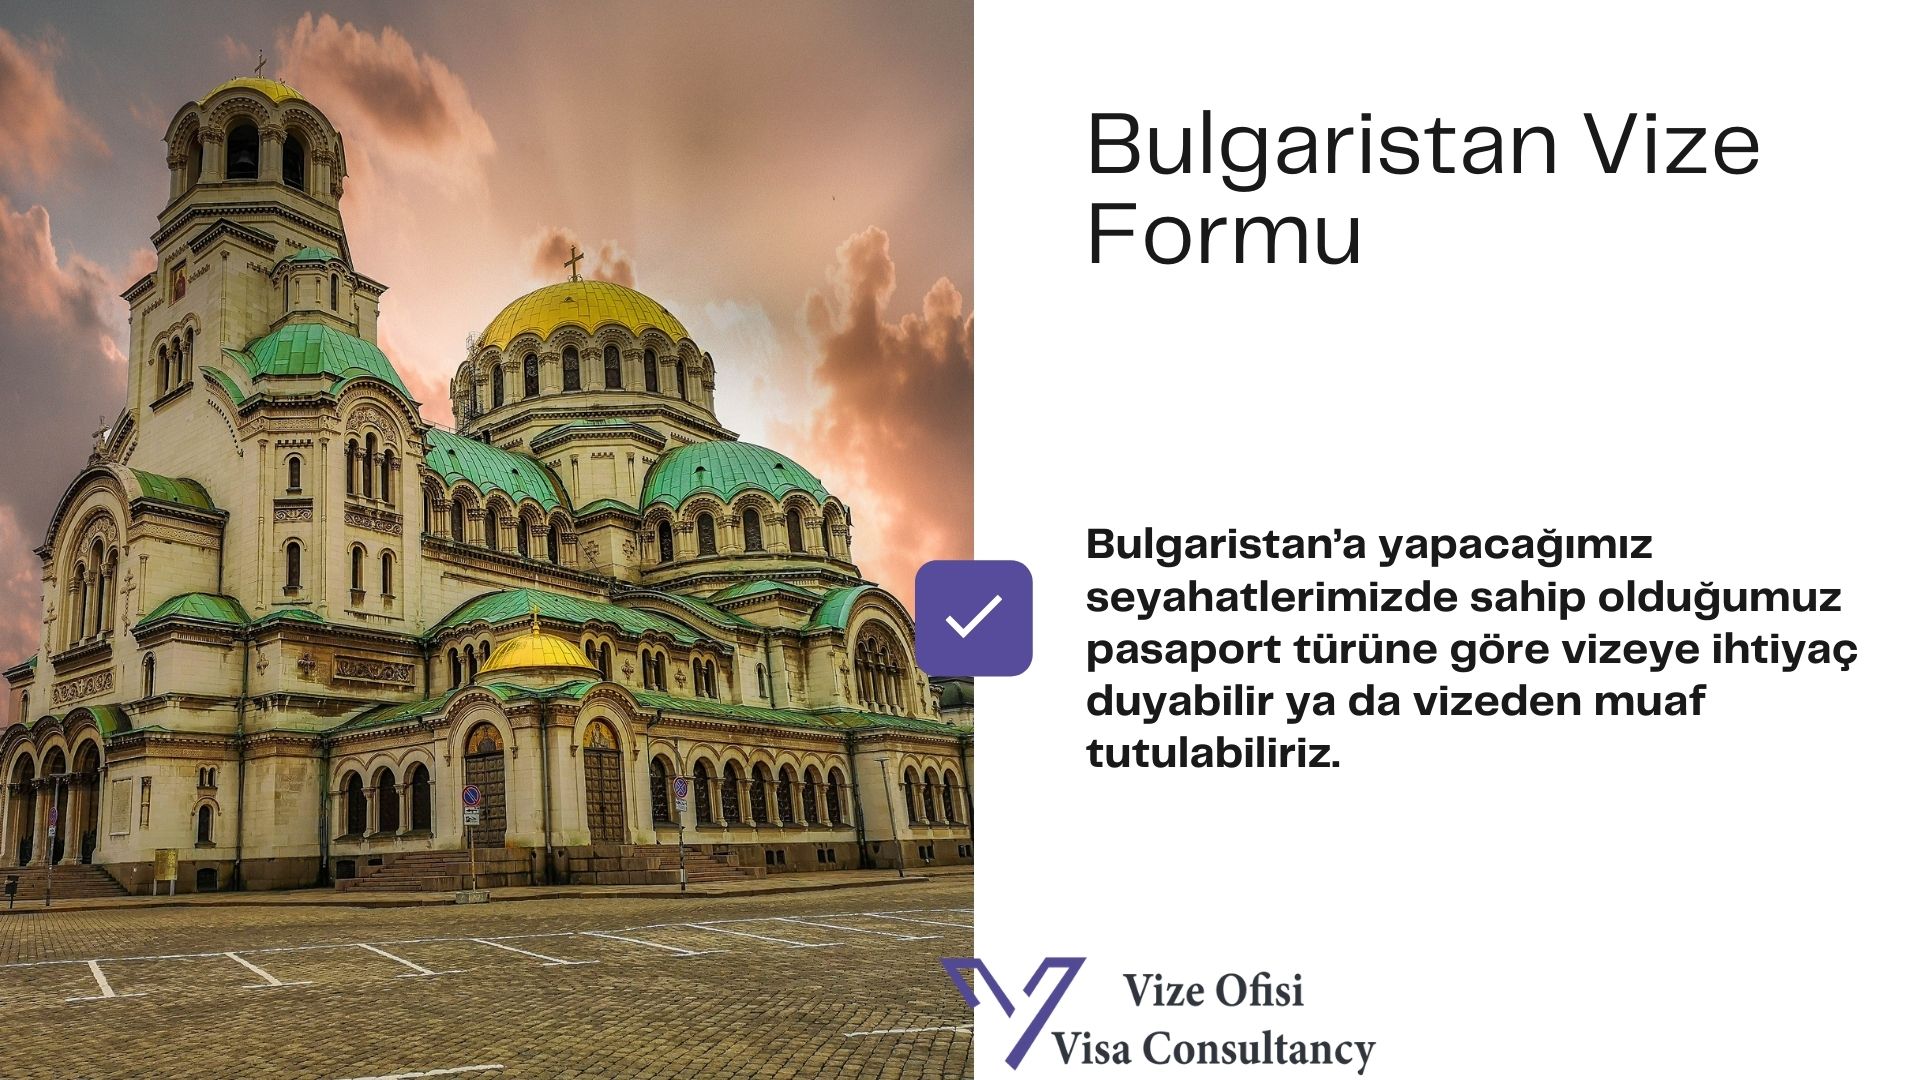 Bulgaristan Vize Form ve Dilekçe 2021